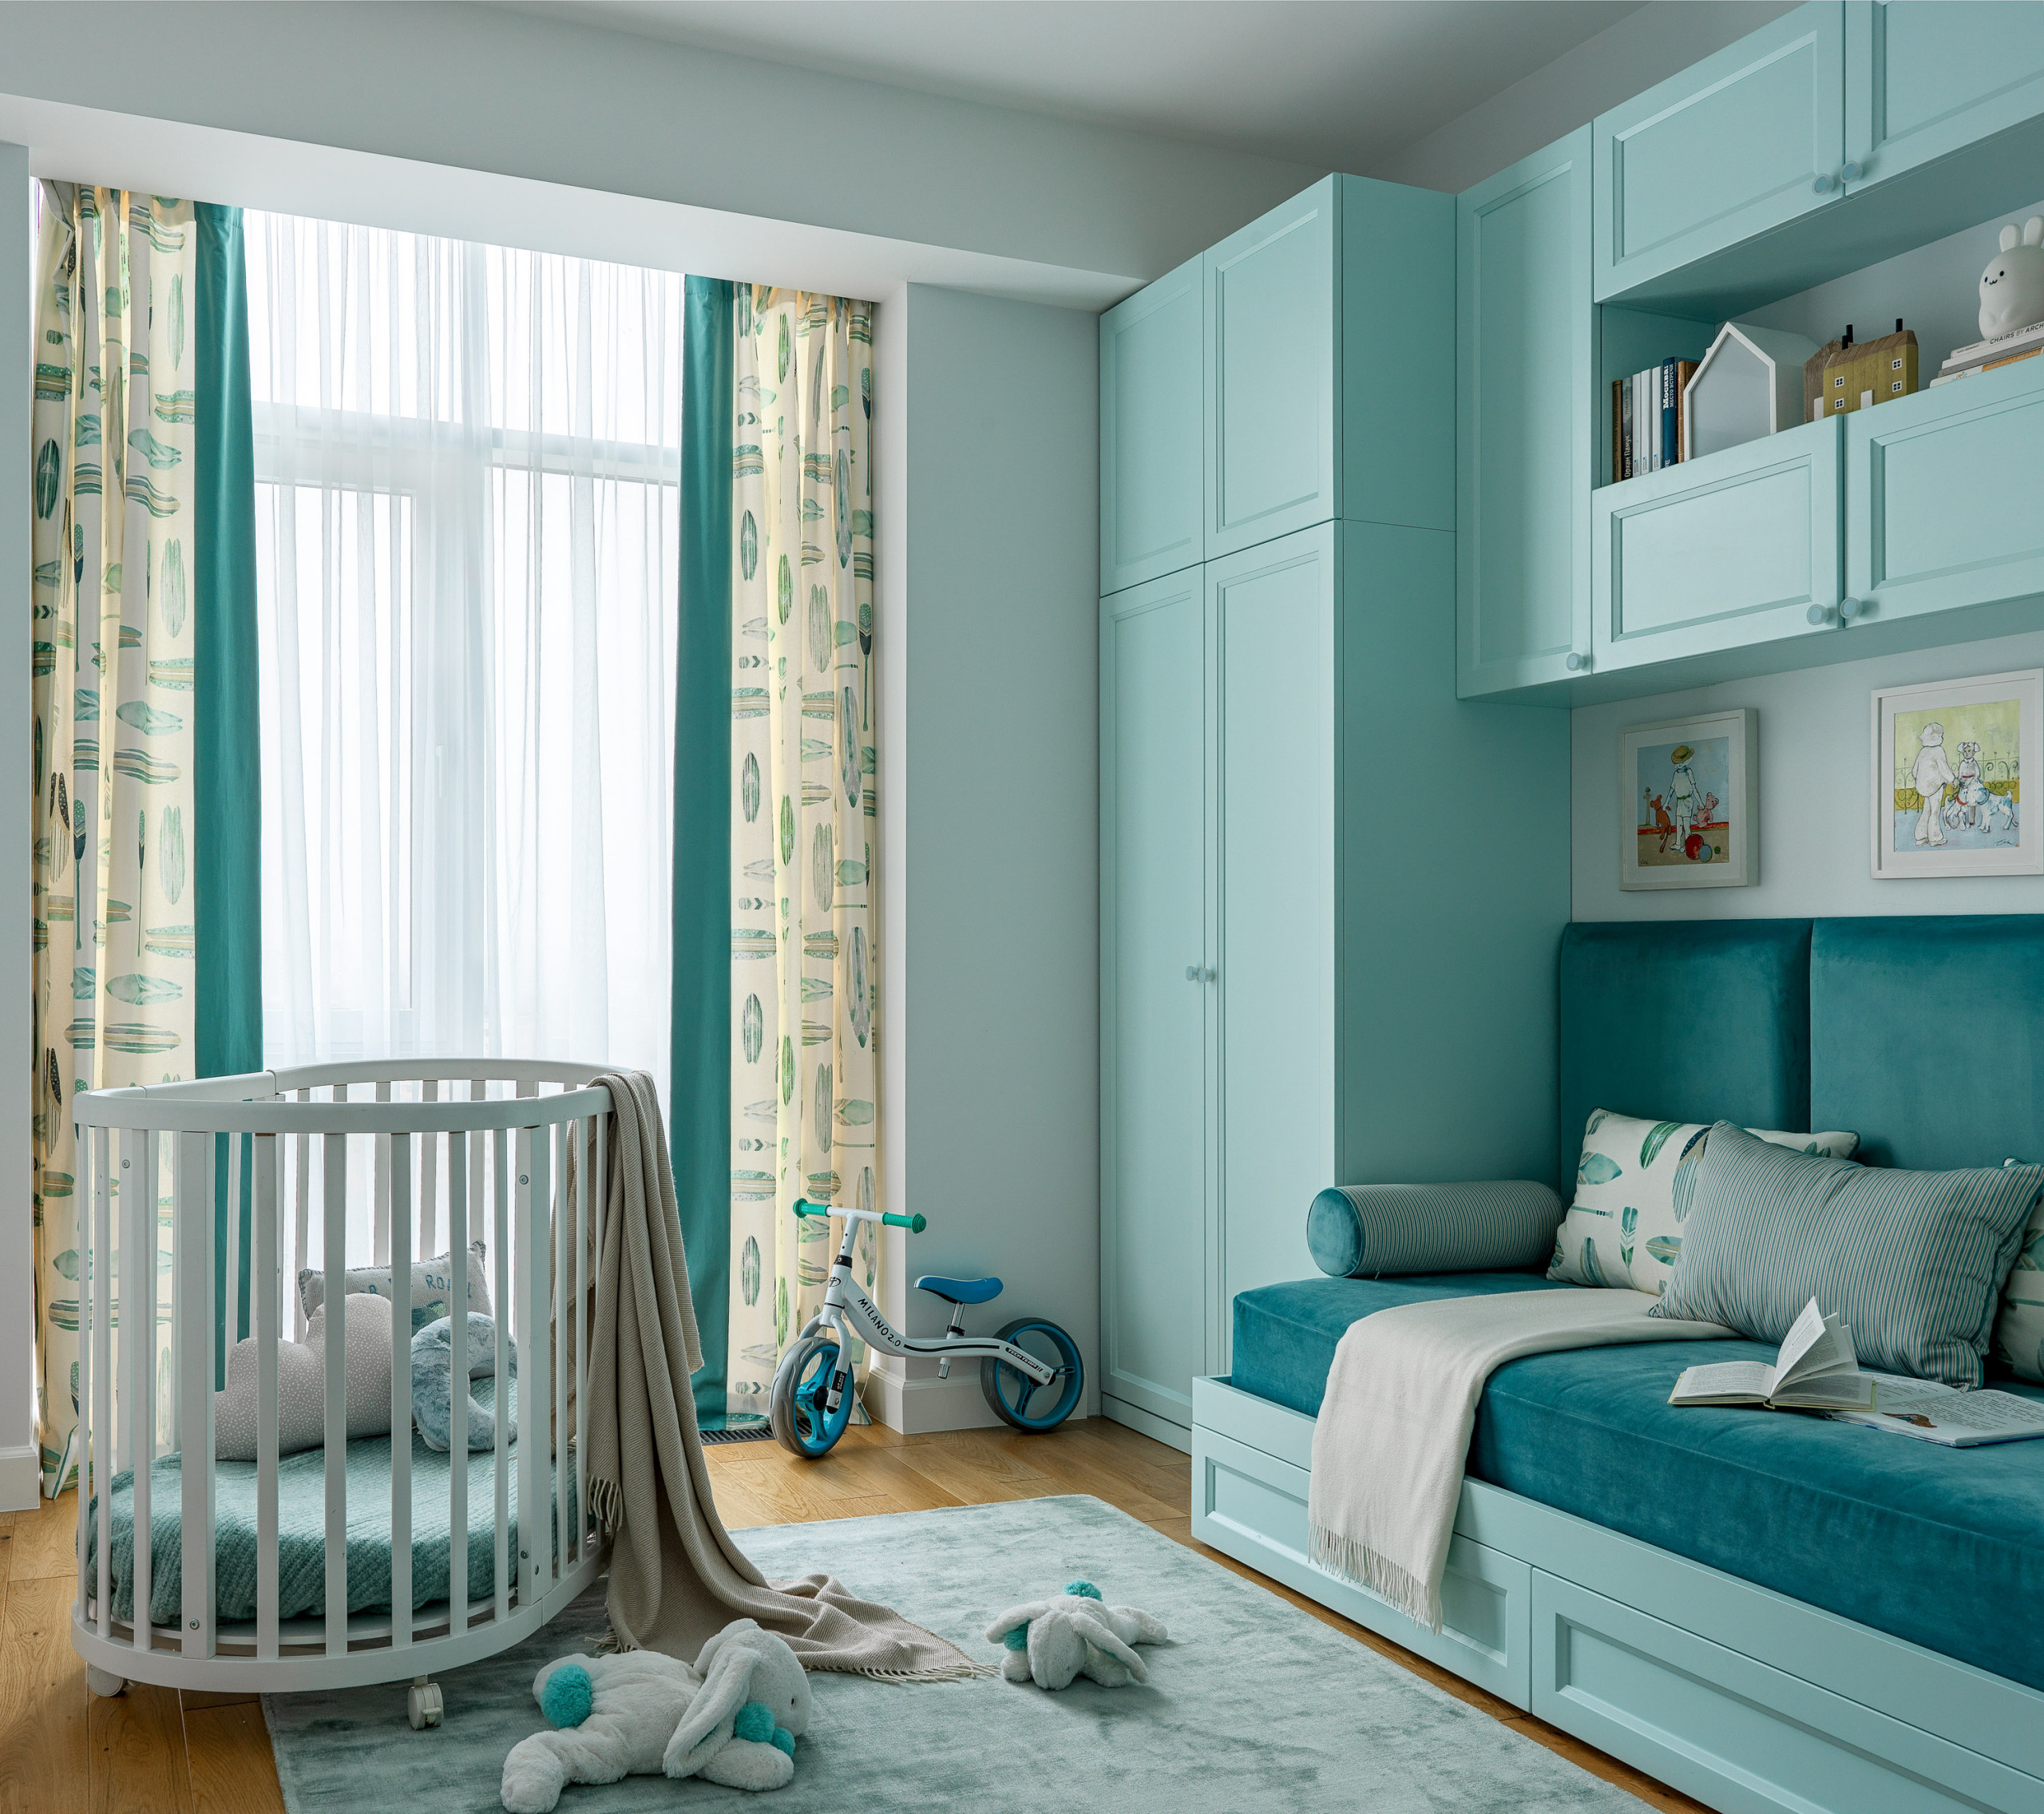 Обустройство комнаты для новорожденных. С чего начать? Совет профессионального дизайнера